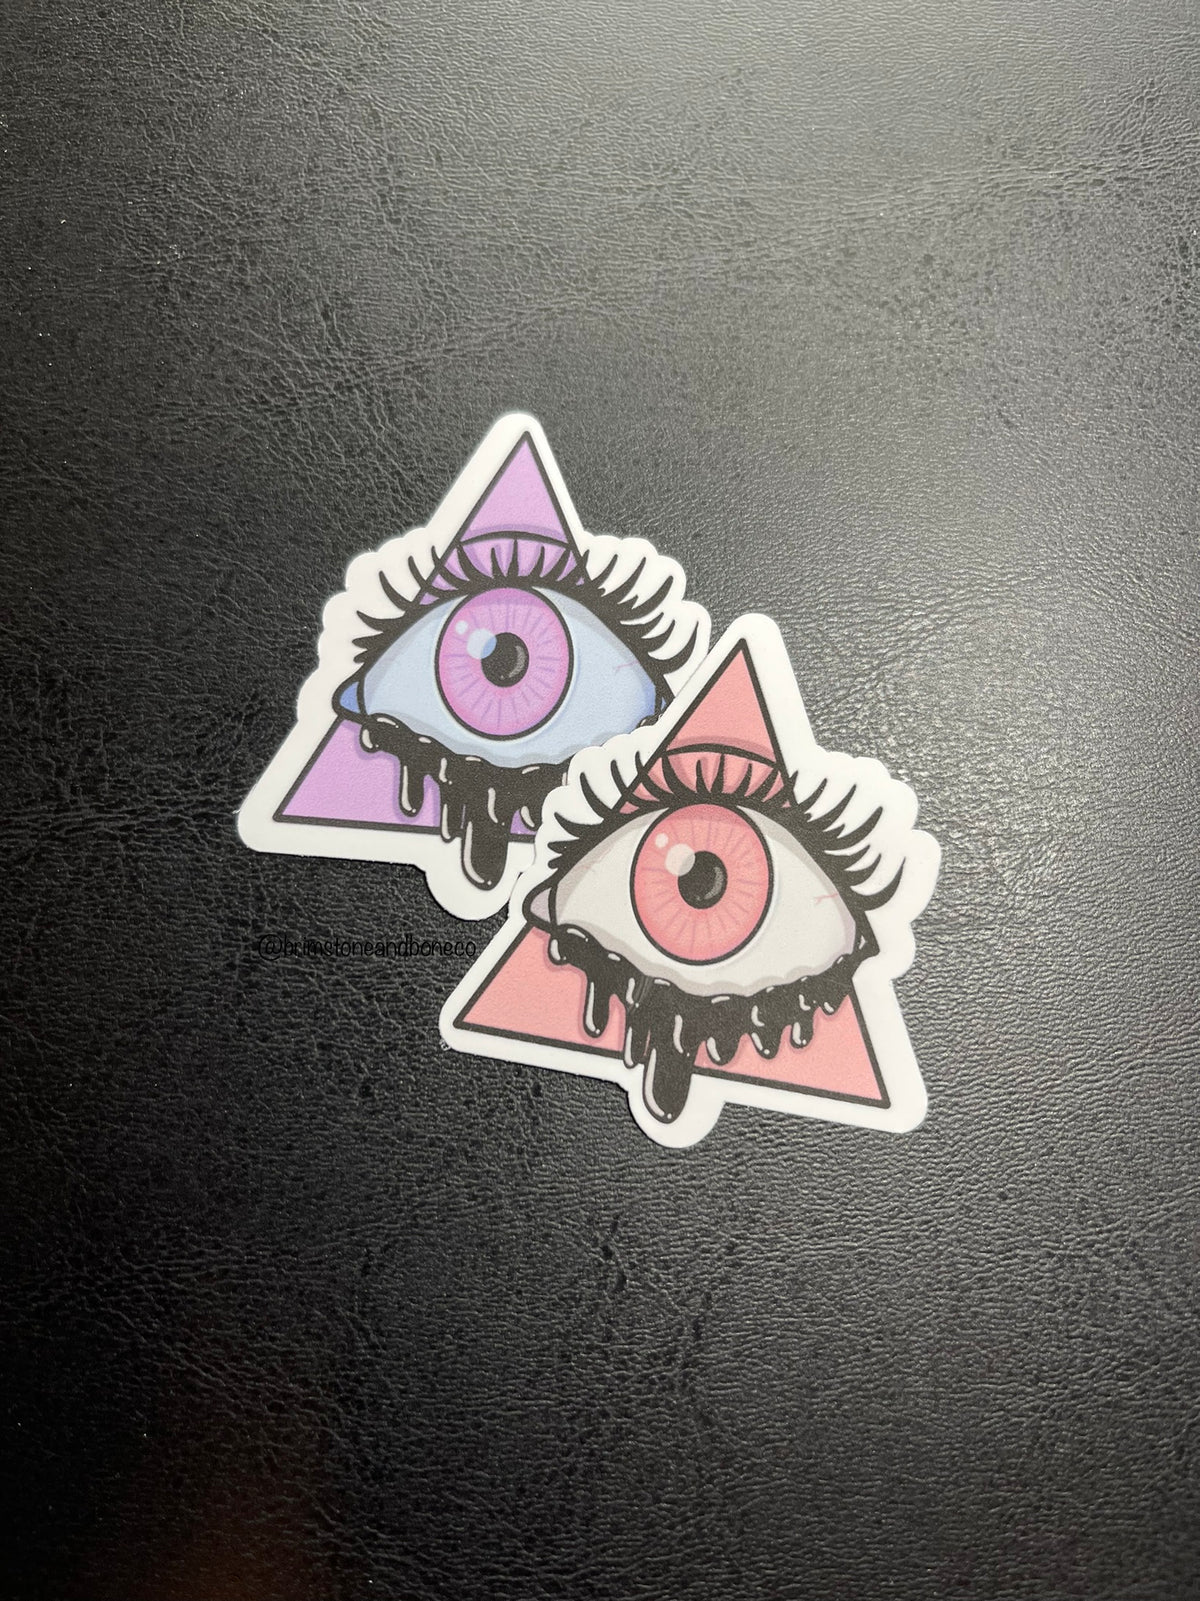 All Seeing Eye Vinyl Sticker